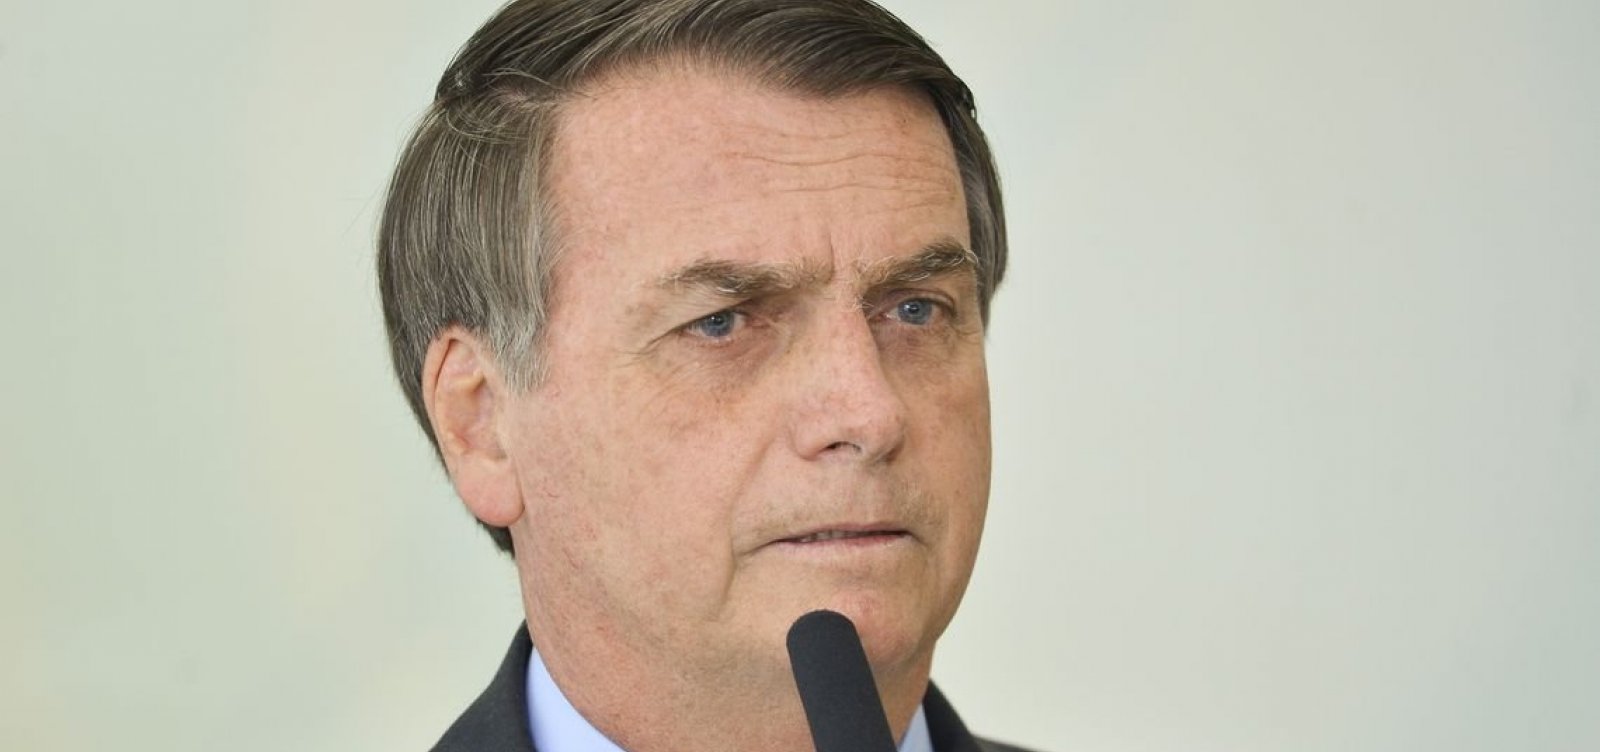 'A imprensa está acabando. Não se acha a verdade ali', diz Bolsonaro